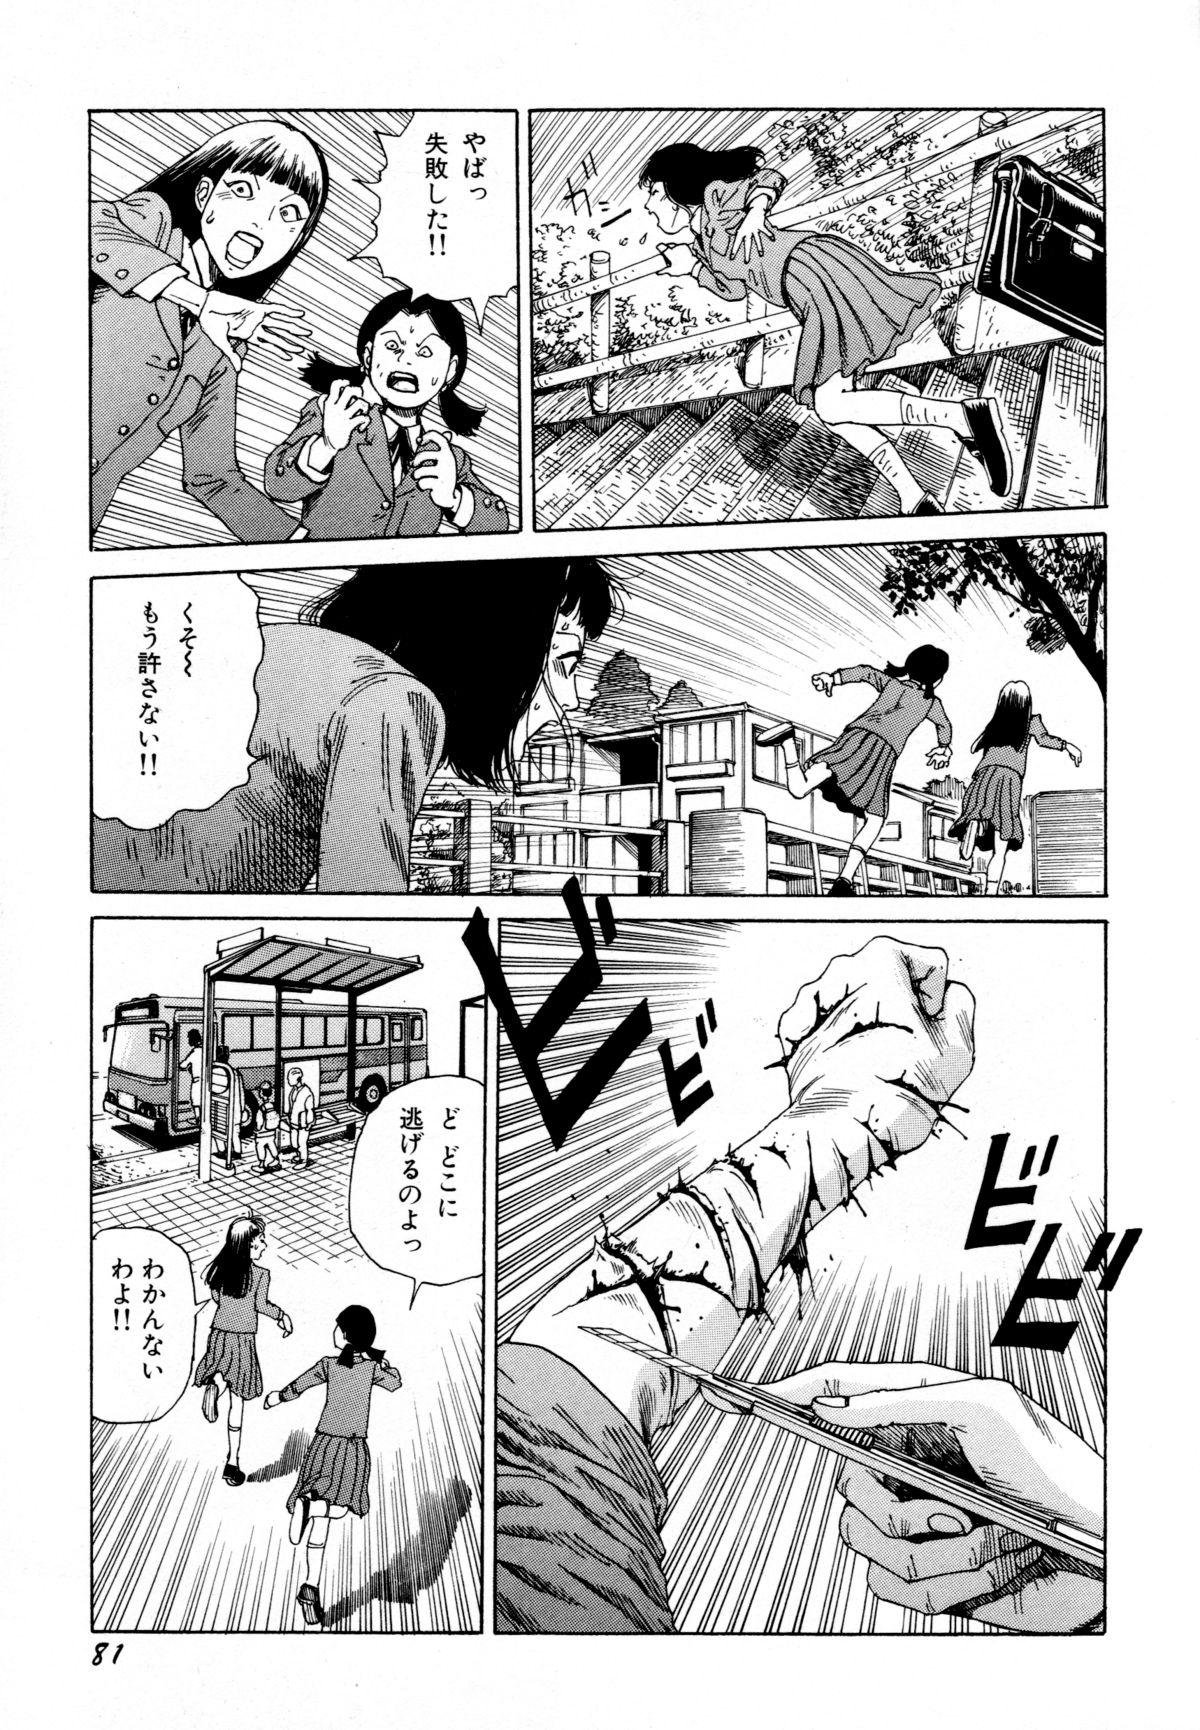 Arijigoku vs Barabara Shoujo - Antlion vs BaraBara Girl 82